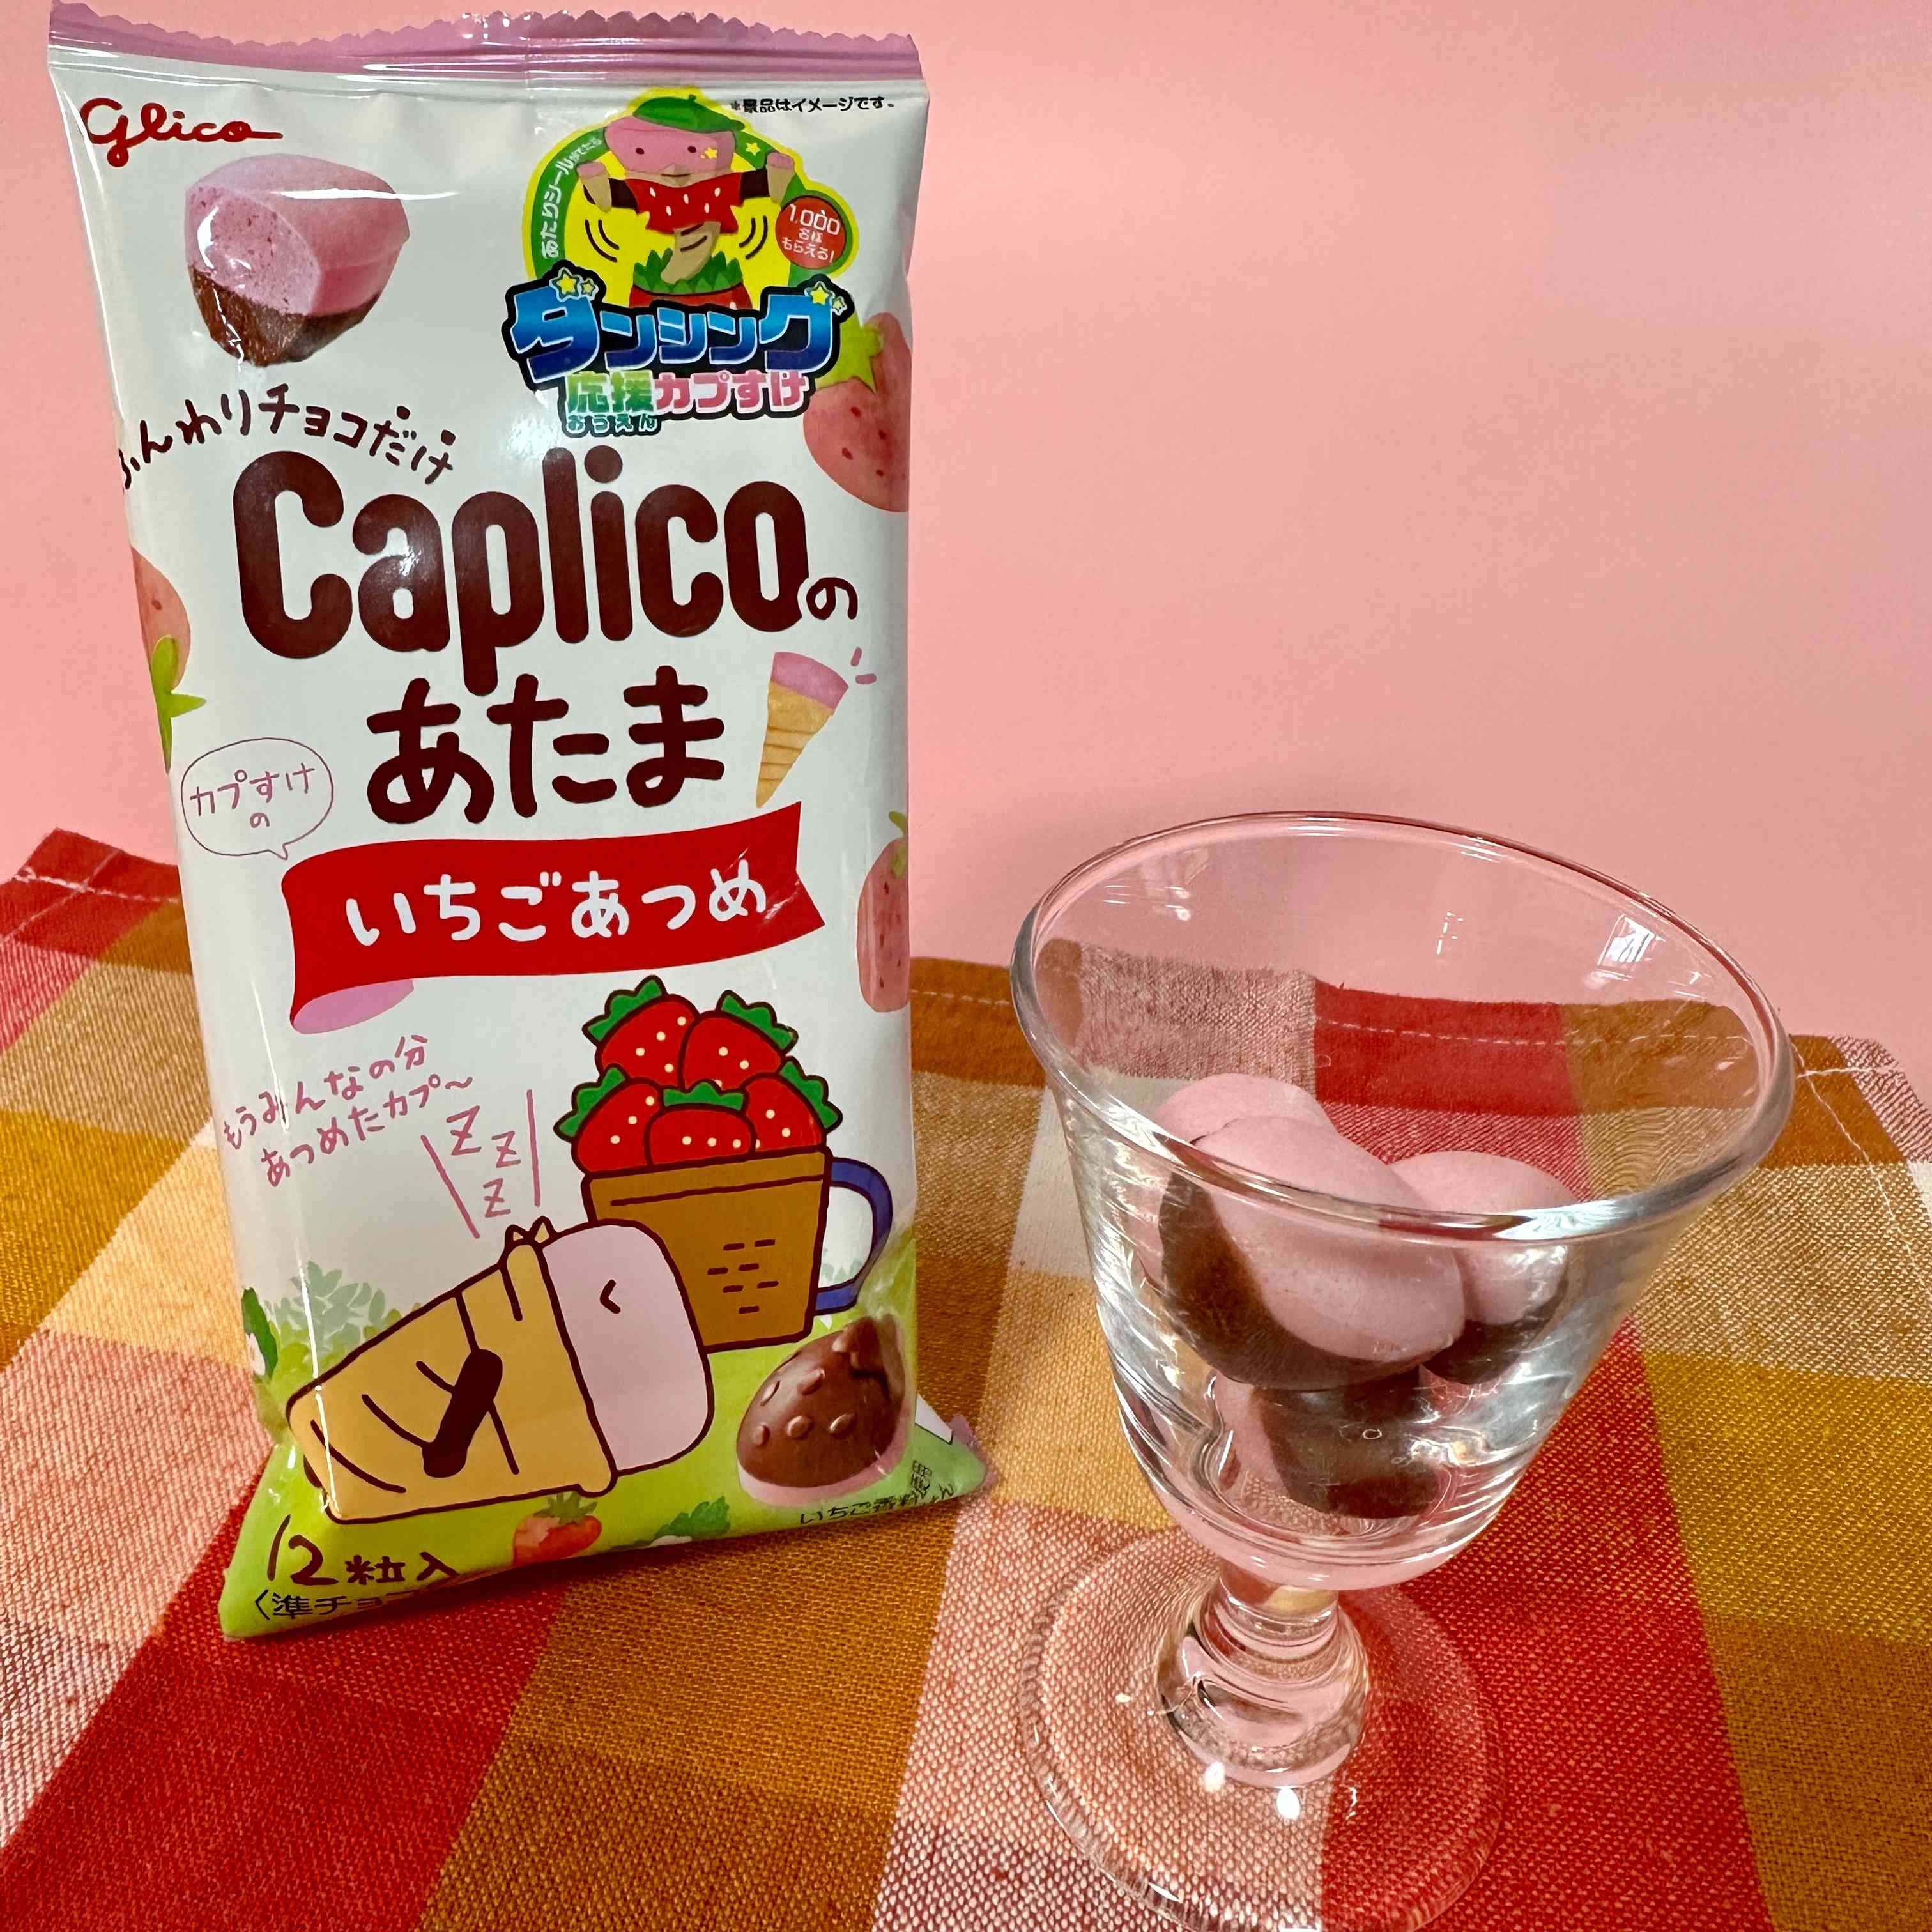 【glico】Caplico's Head　strawberry flavor　120pieces（1case）　3600ｇ